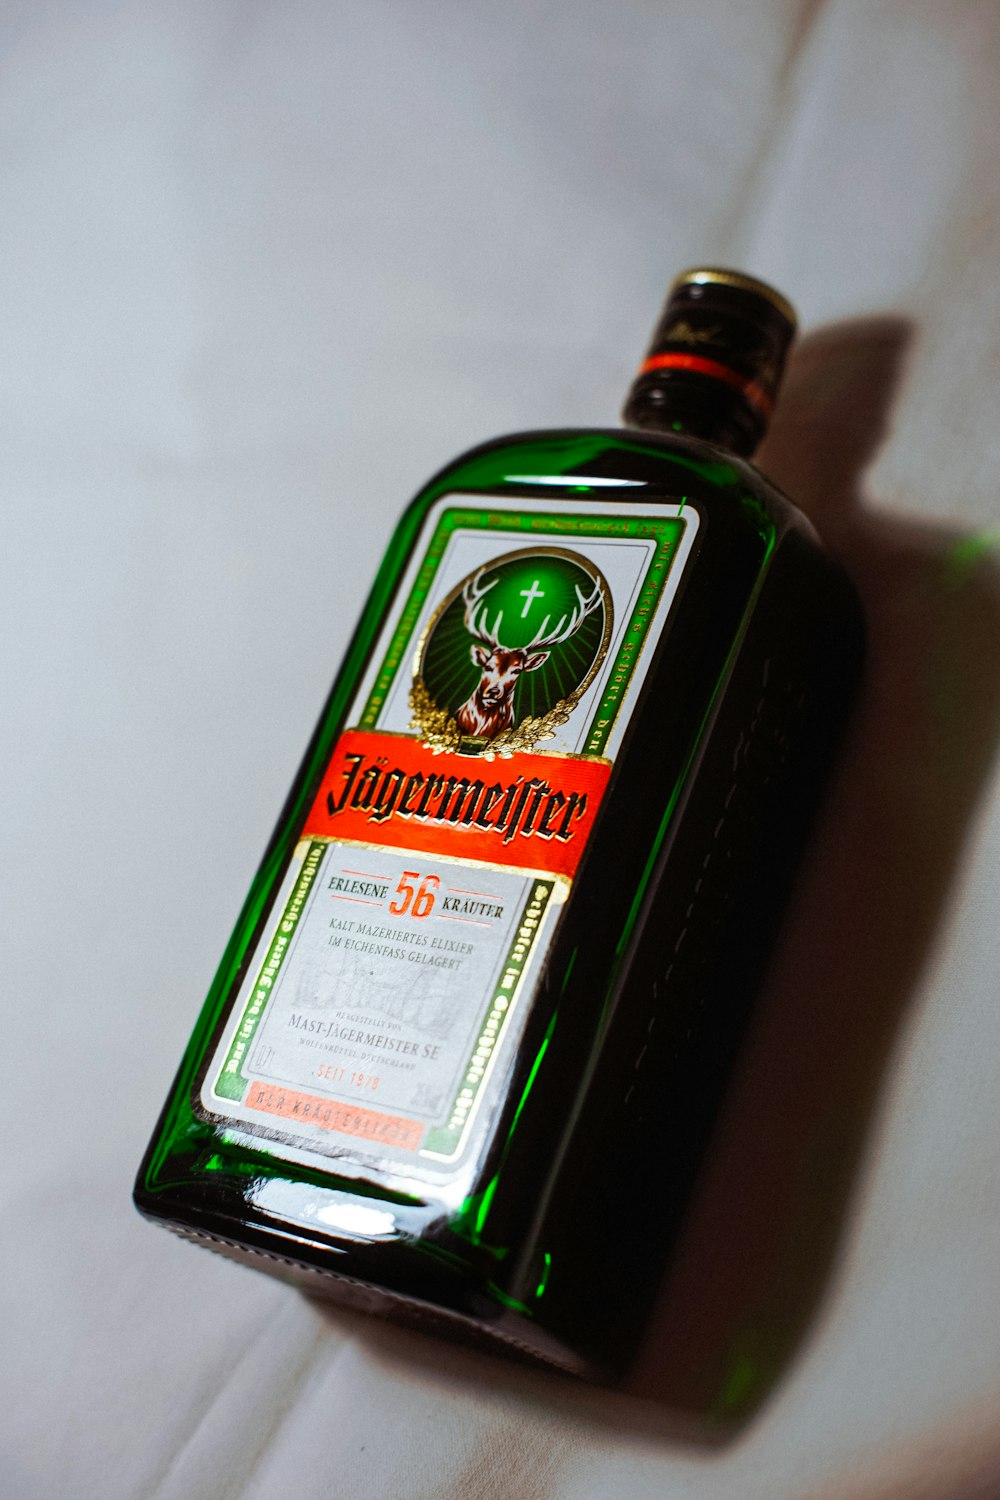 bottiglia con etichetta verde e bianca